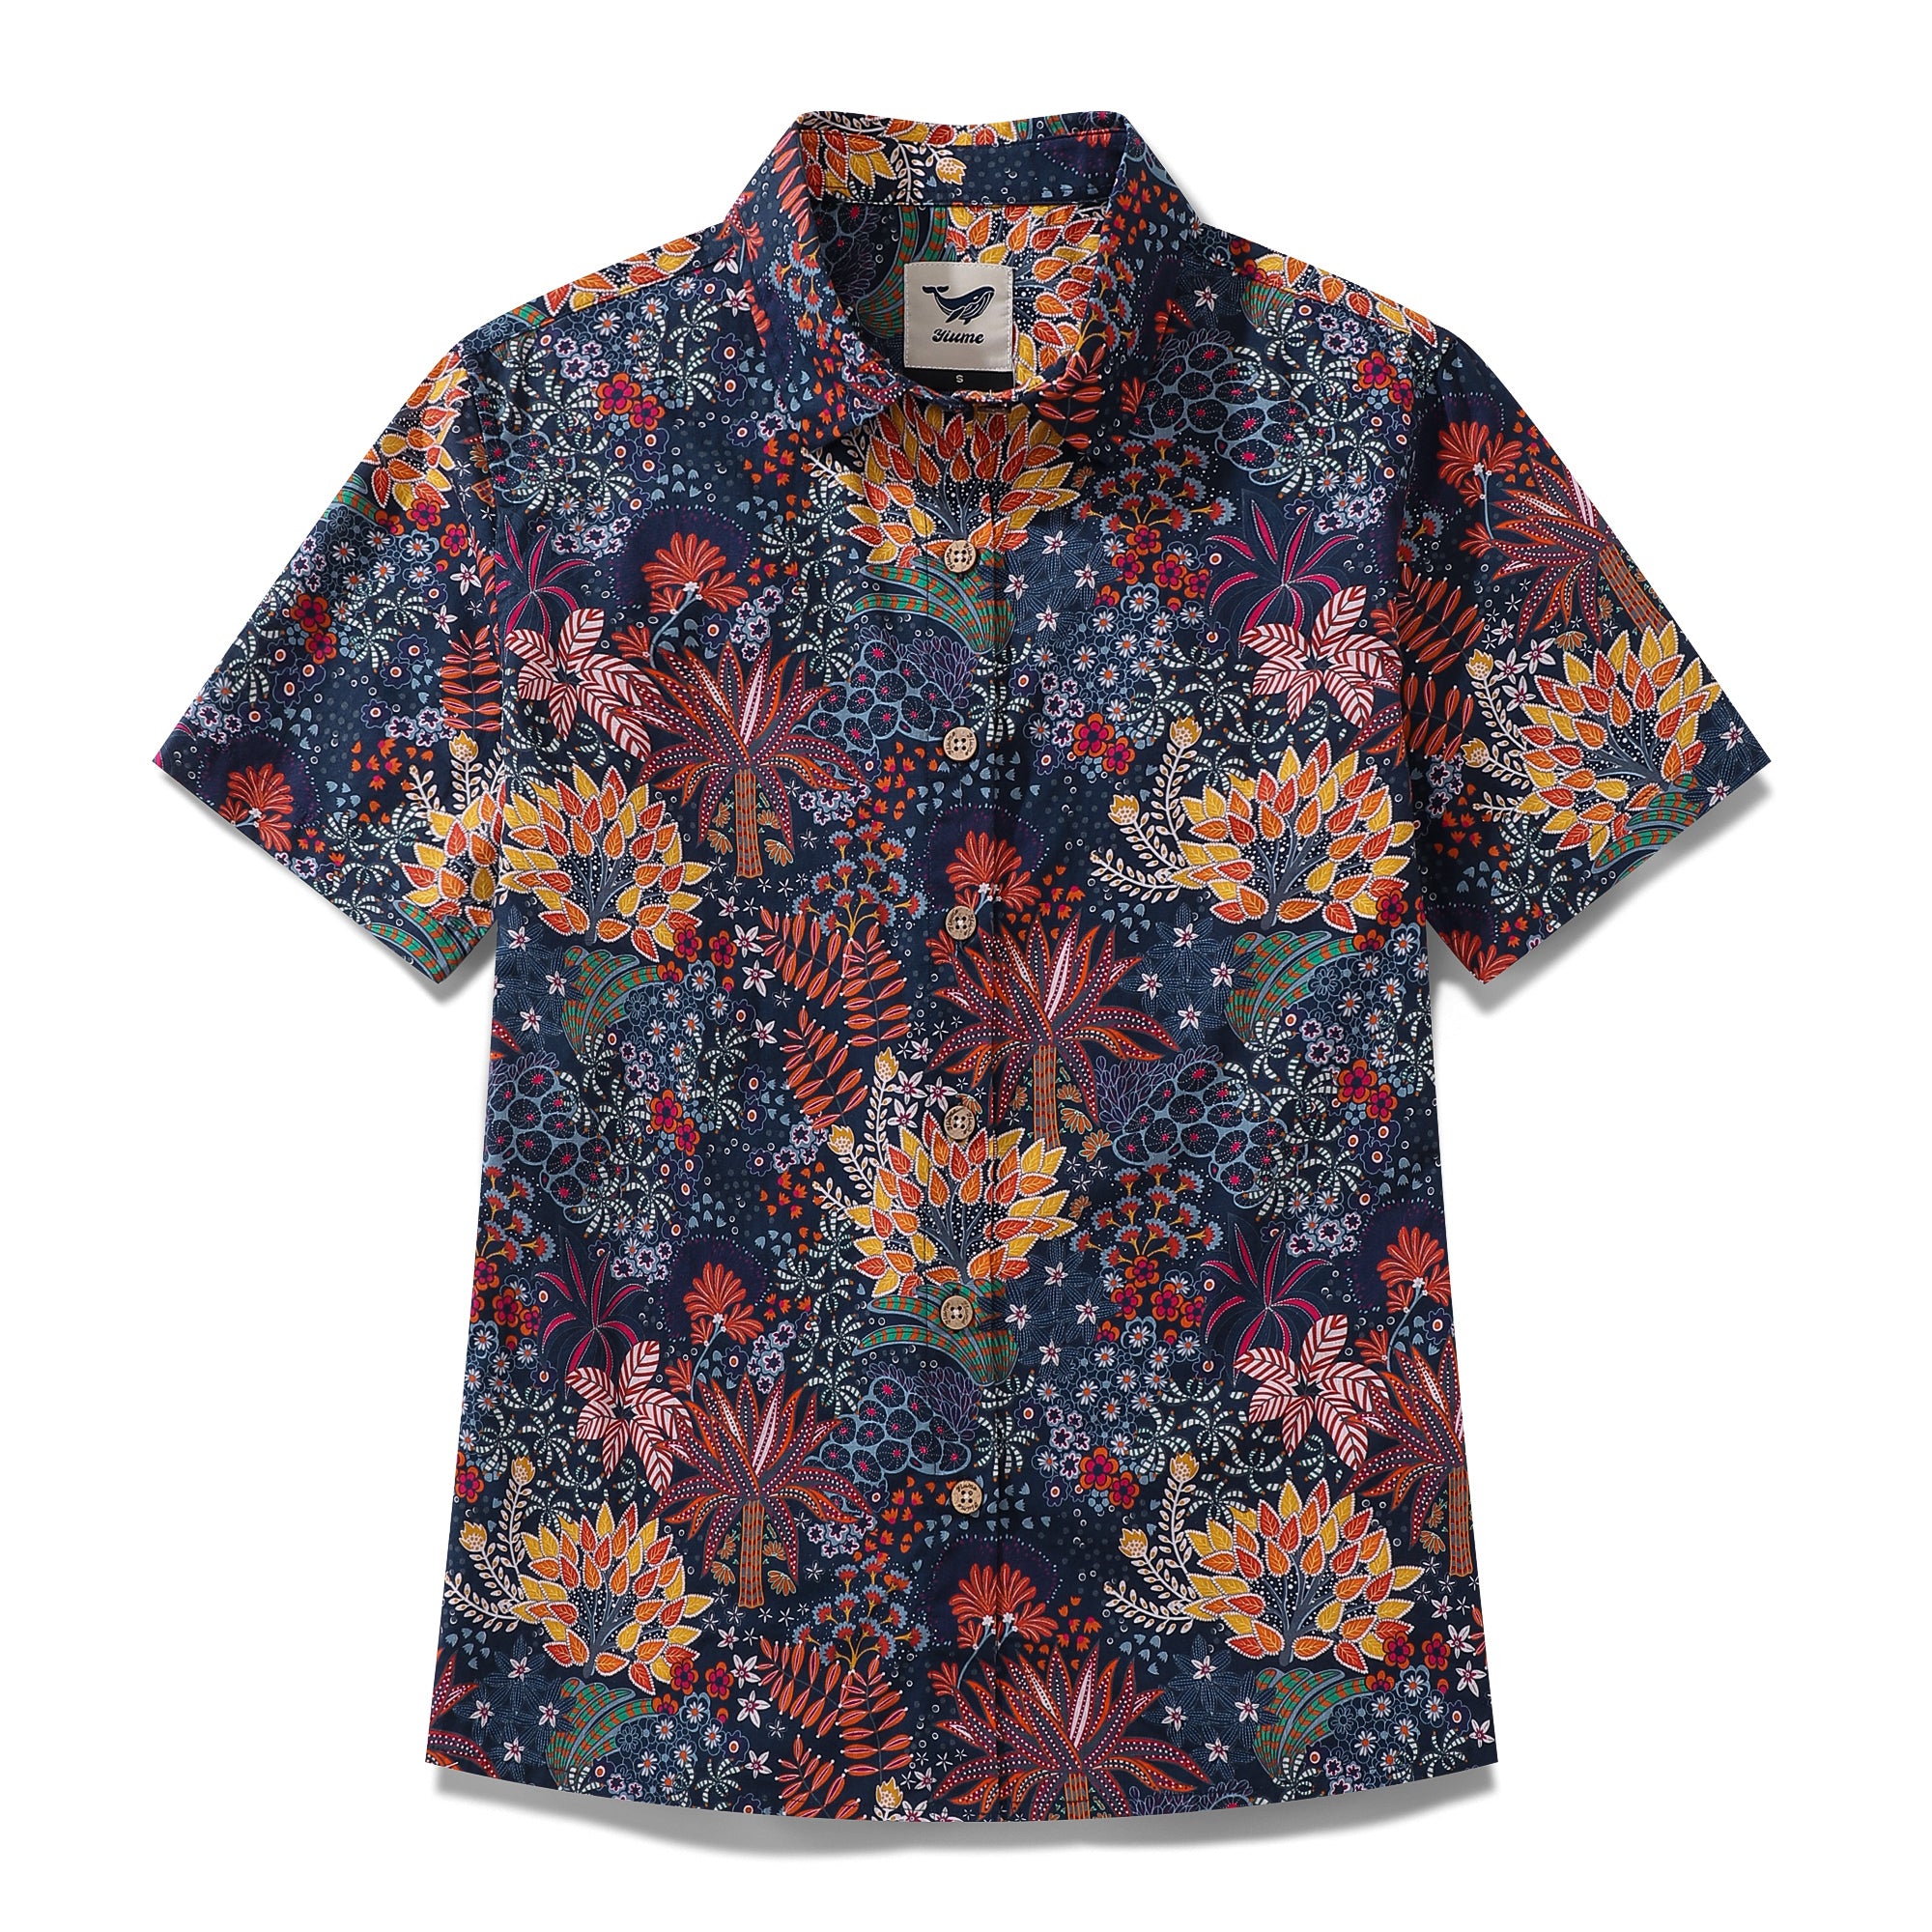 Damen-Hawaiihemd mit Quirky Plants-Print aus Baumwolle mit kurzen Ärmeln und Knopfleiste